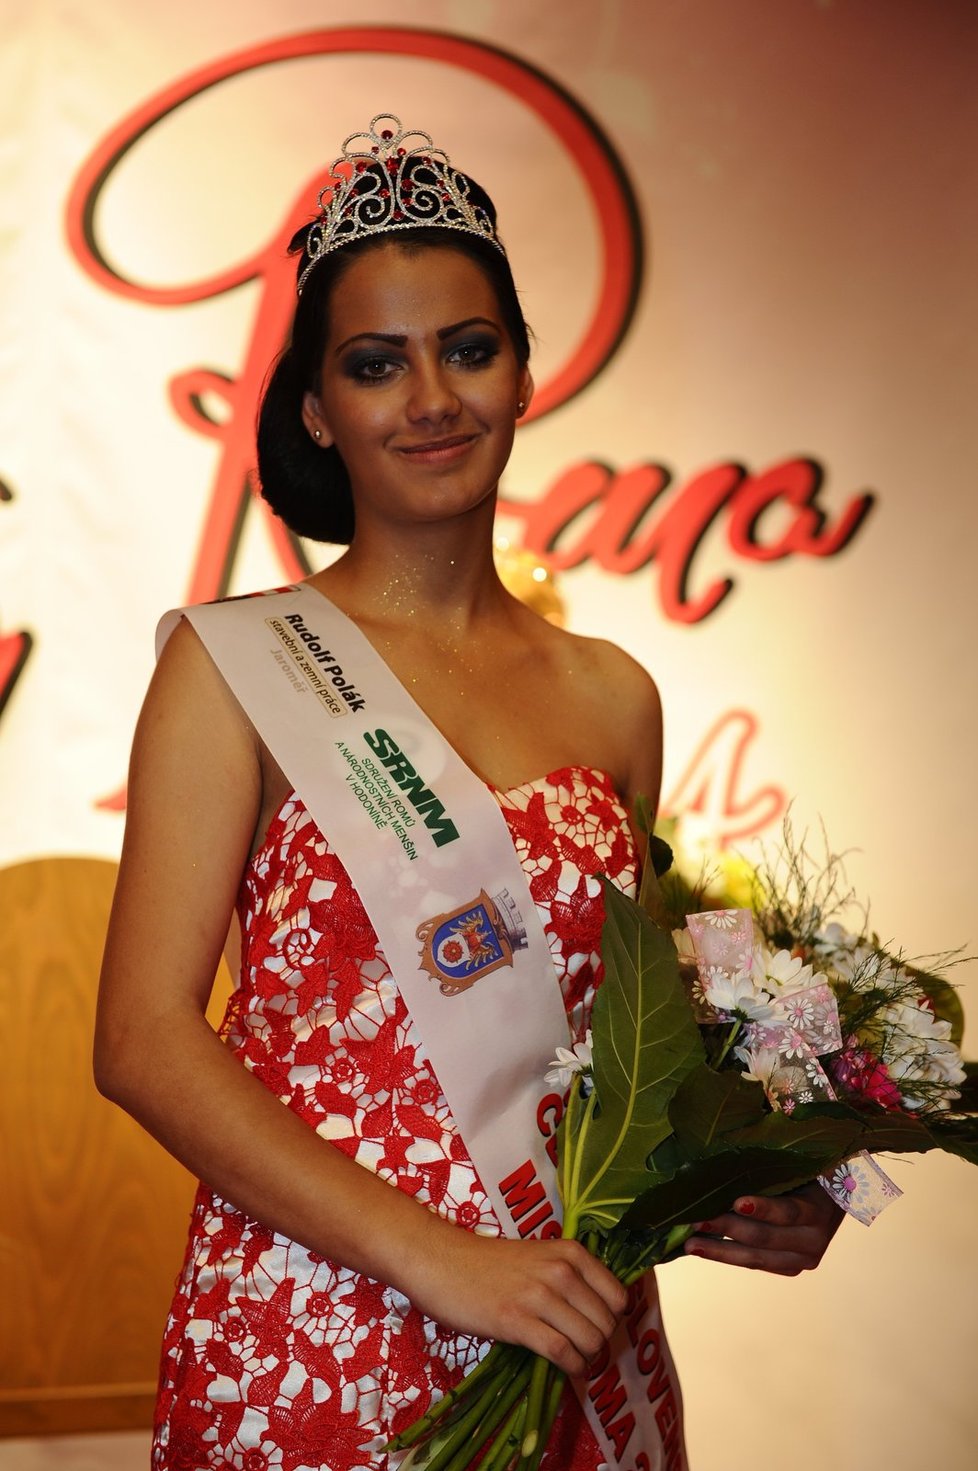 Vítězka Miss Roma 2014 Adriana pochází ze slovenské obce Gbely